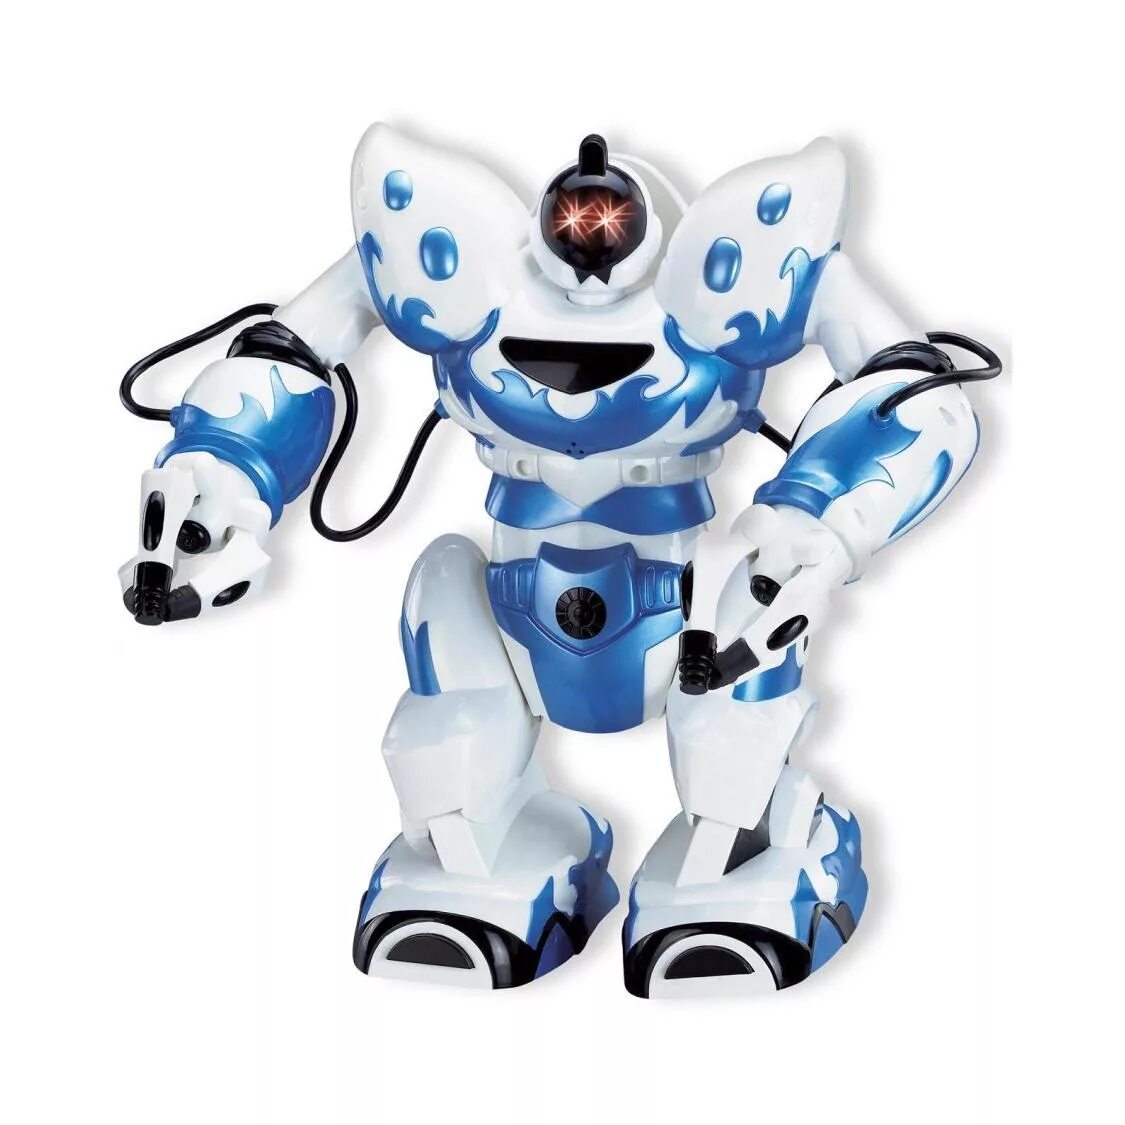 Игрушка робот. Робот игрушечный. Роботы роботы игрушки. Маленькие роботы игрушки.